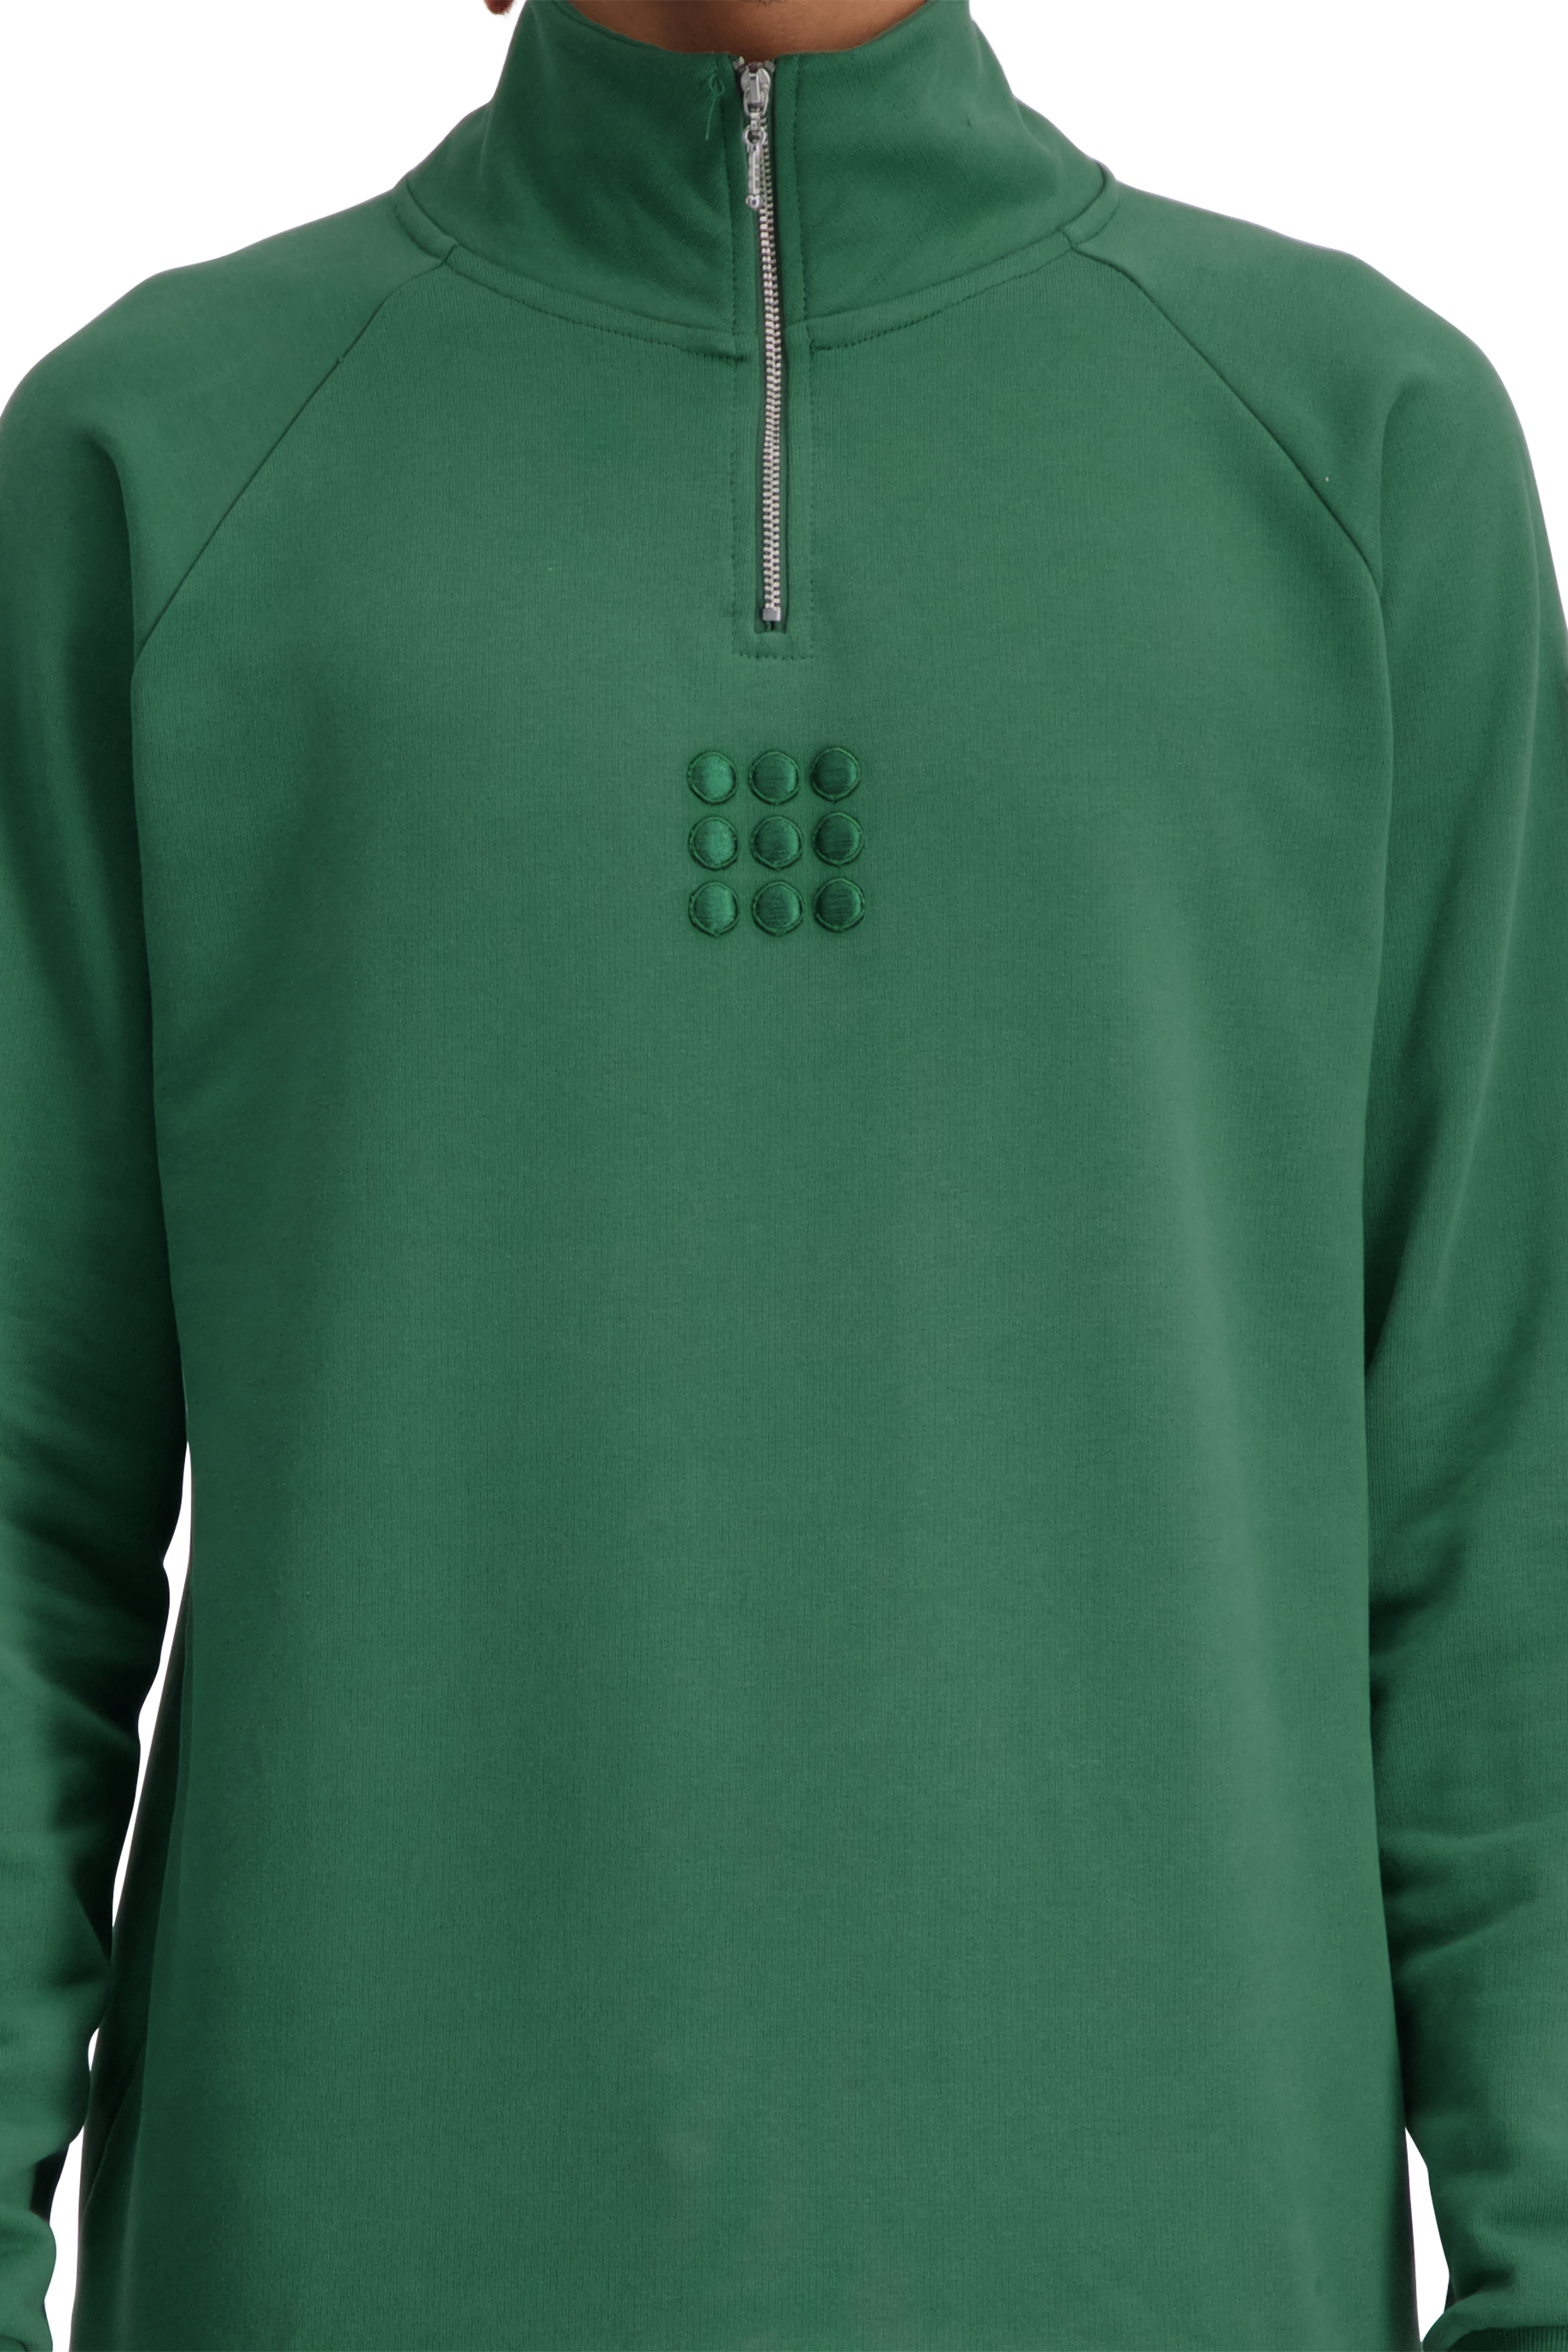 Testudo Sweater 2.0 Green